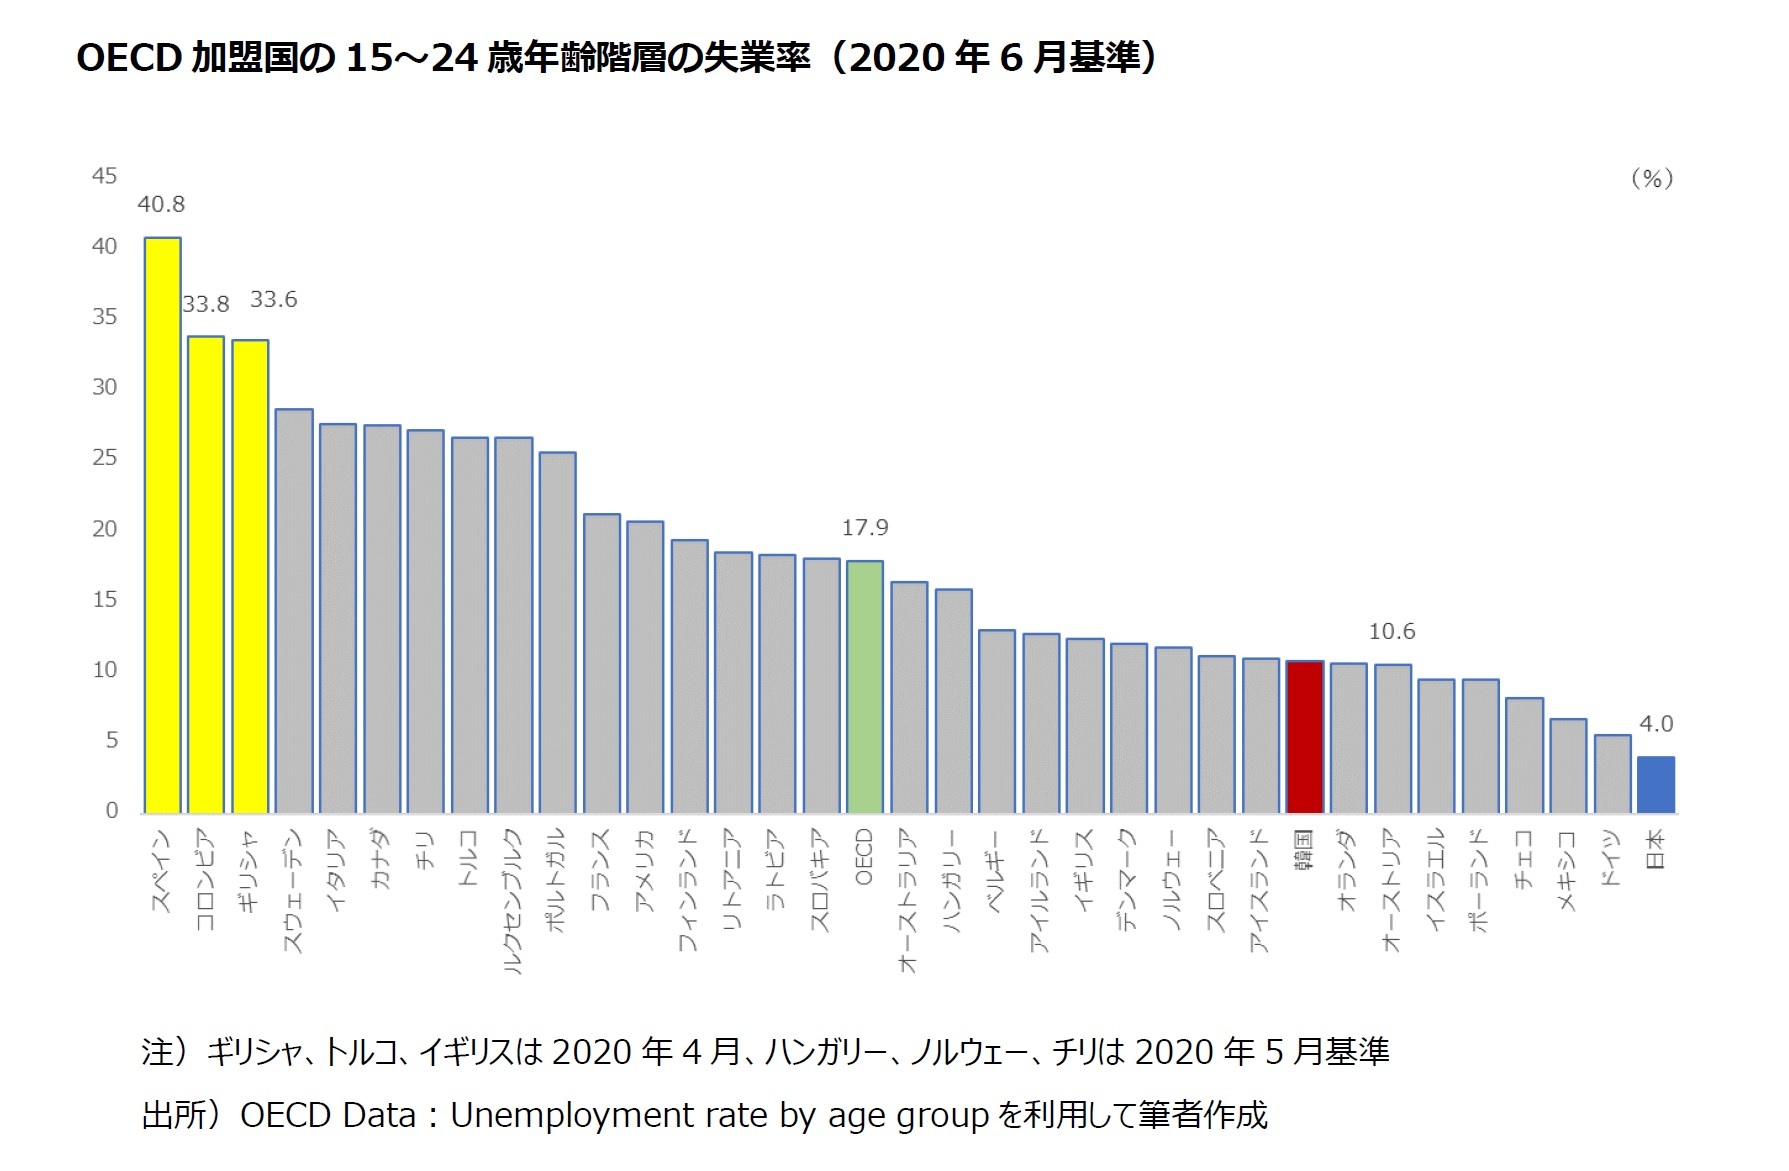 OECD 加盟国の15～24 歳年齢階層の失業率（2020 年6 月基準）